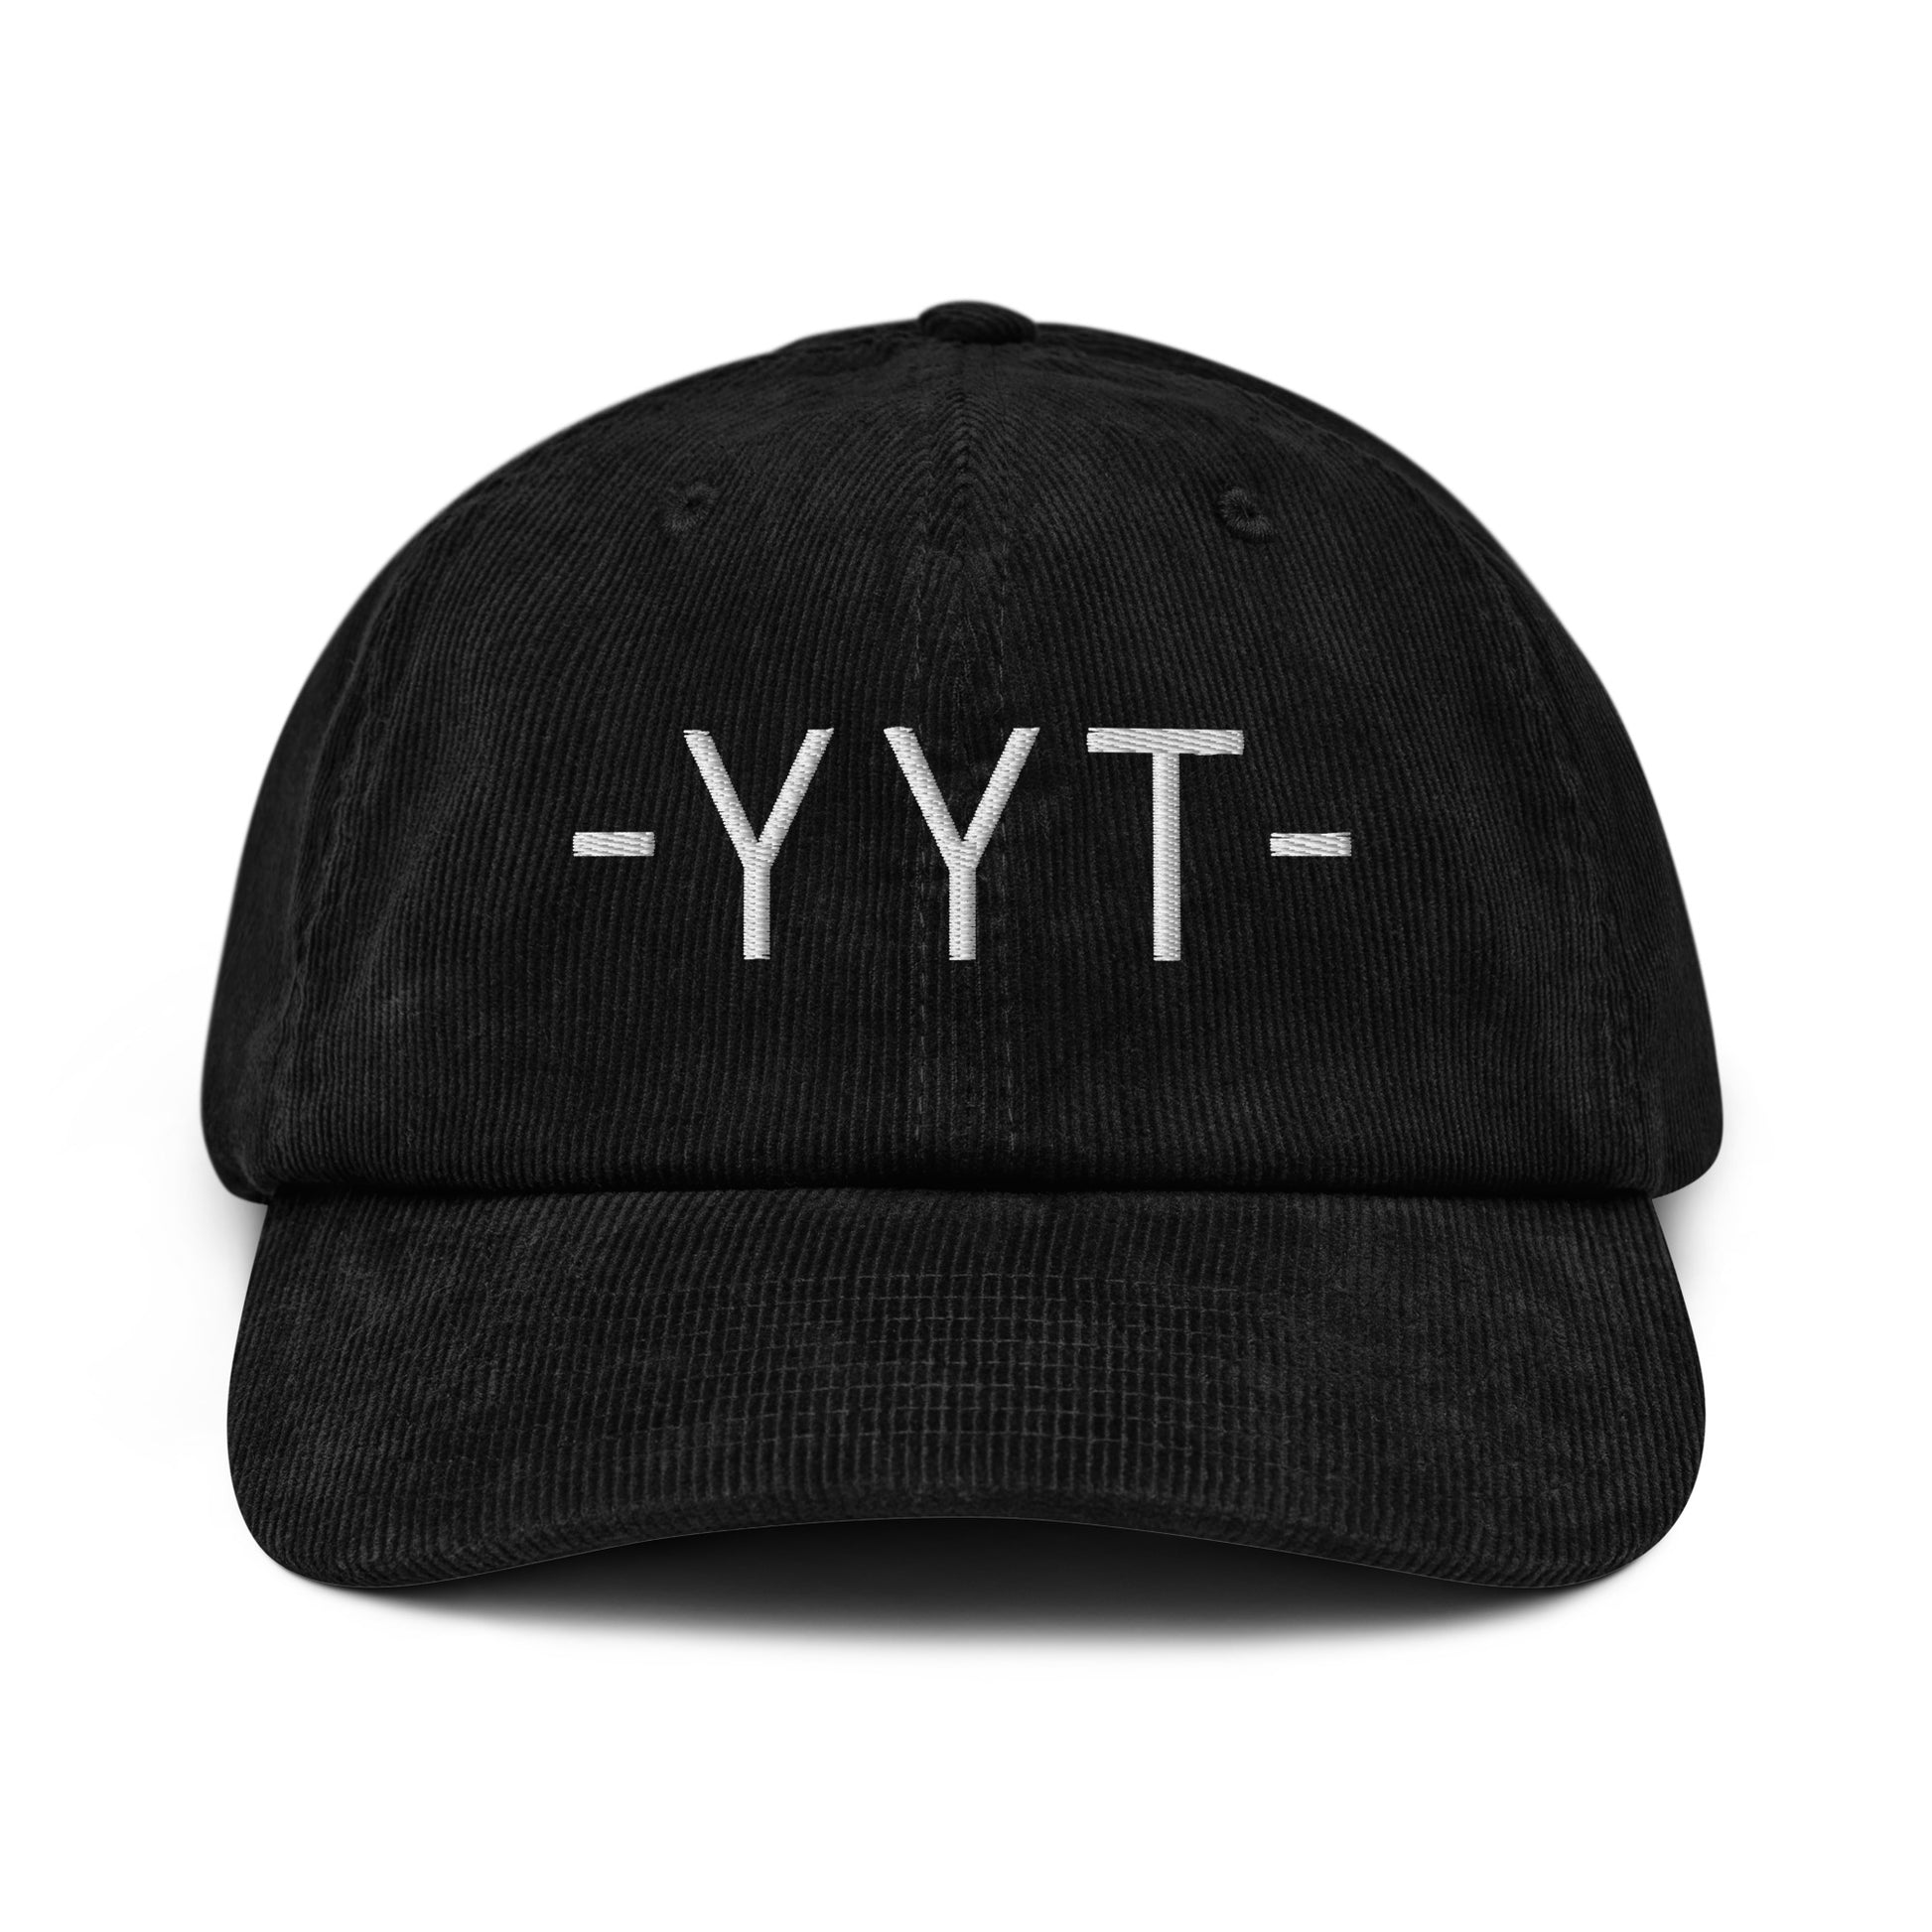 Souvenir Corduroy Hat - White • YYT St. John's • YHM Designs - Image 13